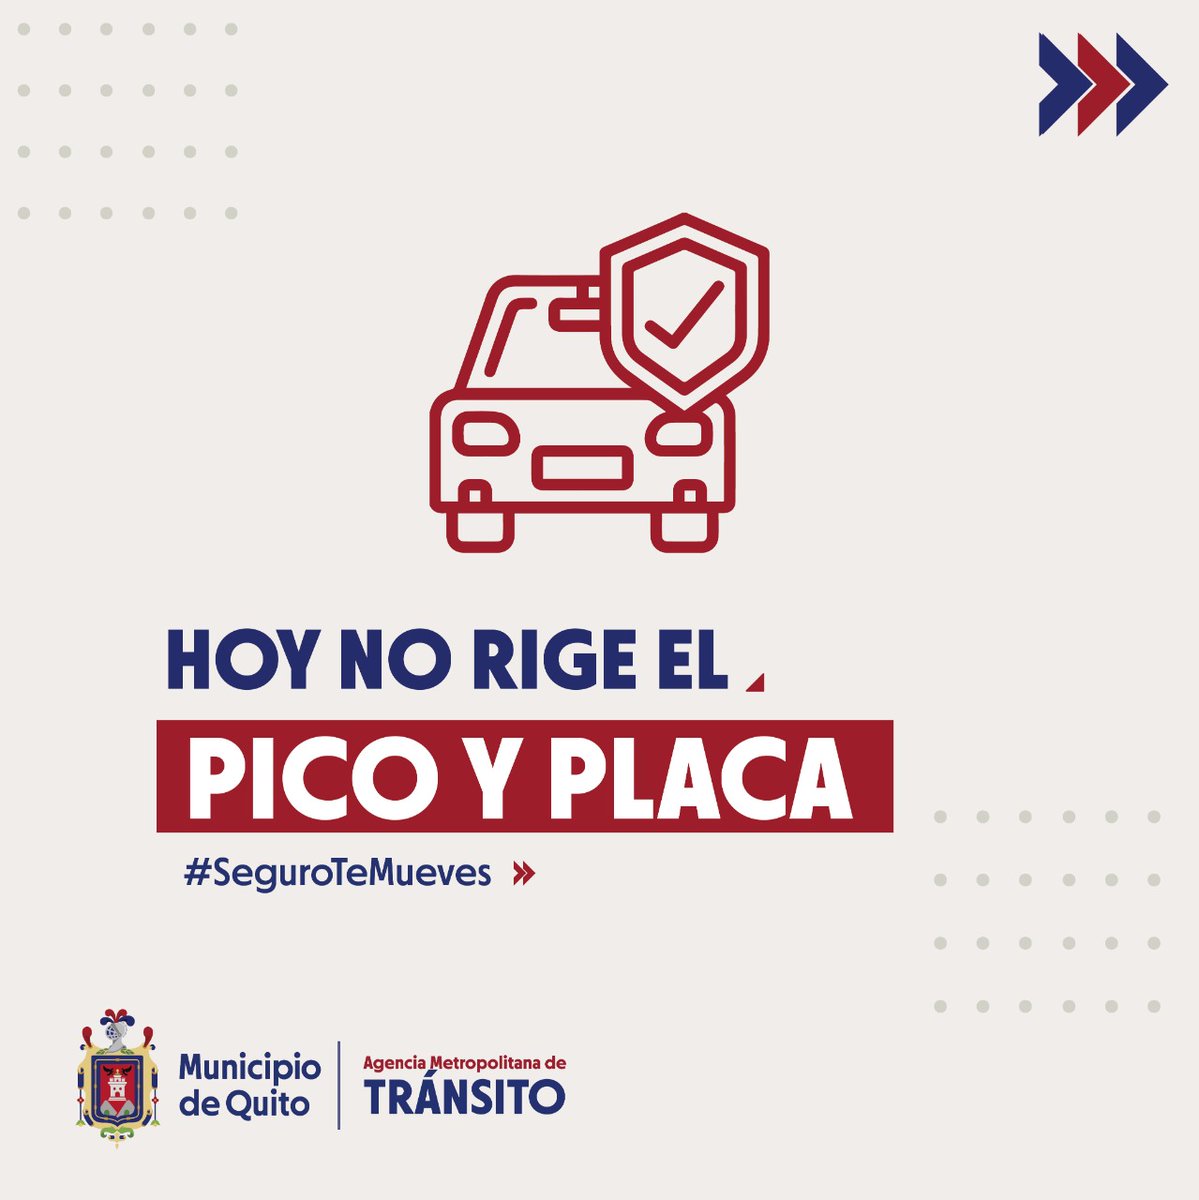 #BuenosDías 🌤️ ¡ℝ𝕖𝕔𝕦𝕖𝕣𝕕𝕒! 💬 Los 𝗳𝗶𝗻𝗲𝘀 𝗱𝗲 𝘀𝗲𝗺𝗮𝗻𝗮 𝘆 𝗳𝗲𝗿𝗶𝗮𝗱𝗼𝘀, 𝐍𝐎 𝐑𝐈𝐆𝐄 la restricción vehicular en Quito. 🚕 🚛 🚙 🚗 De acuerdo a la medida #𝗣𝗶𝗰𝗼𝗬𝗣𝗹𝗮𝗰𝗮𝗨𝗜𝗢 🚘